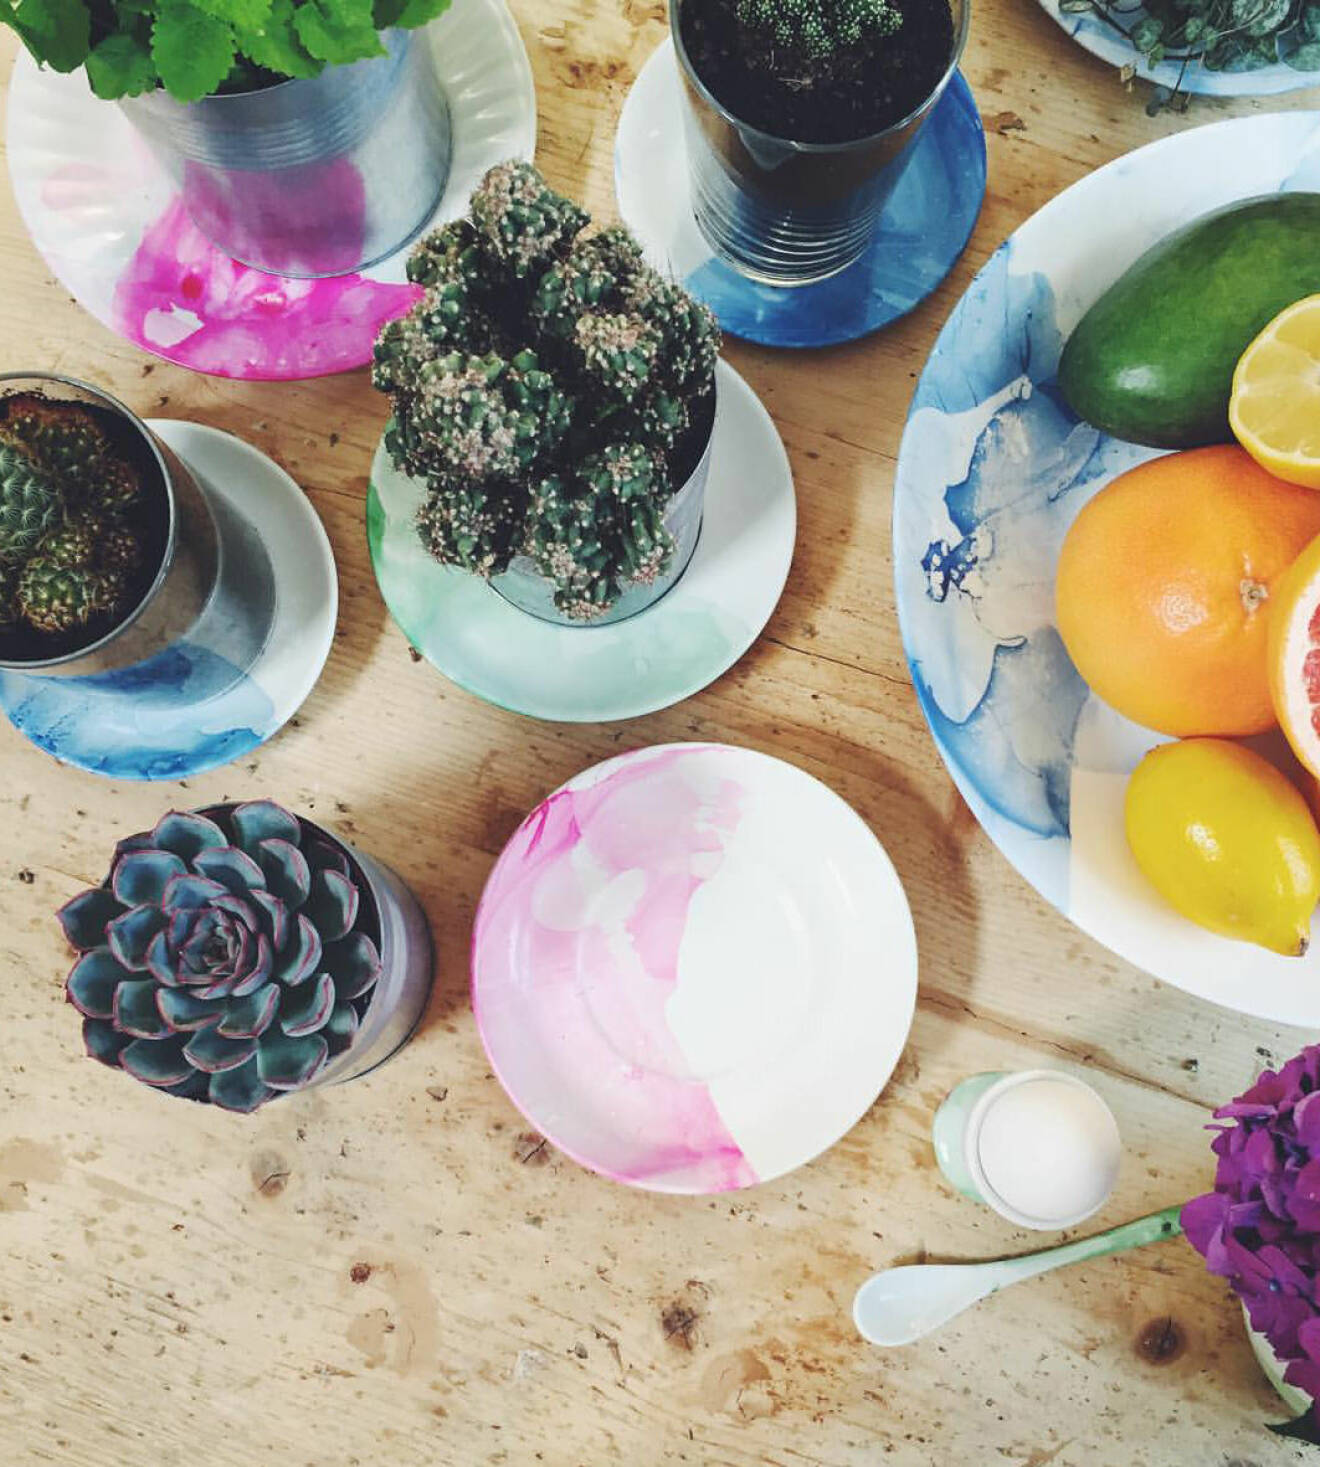 Elsa Billgren dekorerade porslin med nagellack i ”Äntligen hemma”. Foto: Instagram